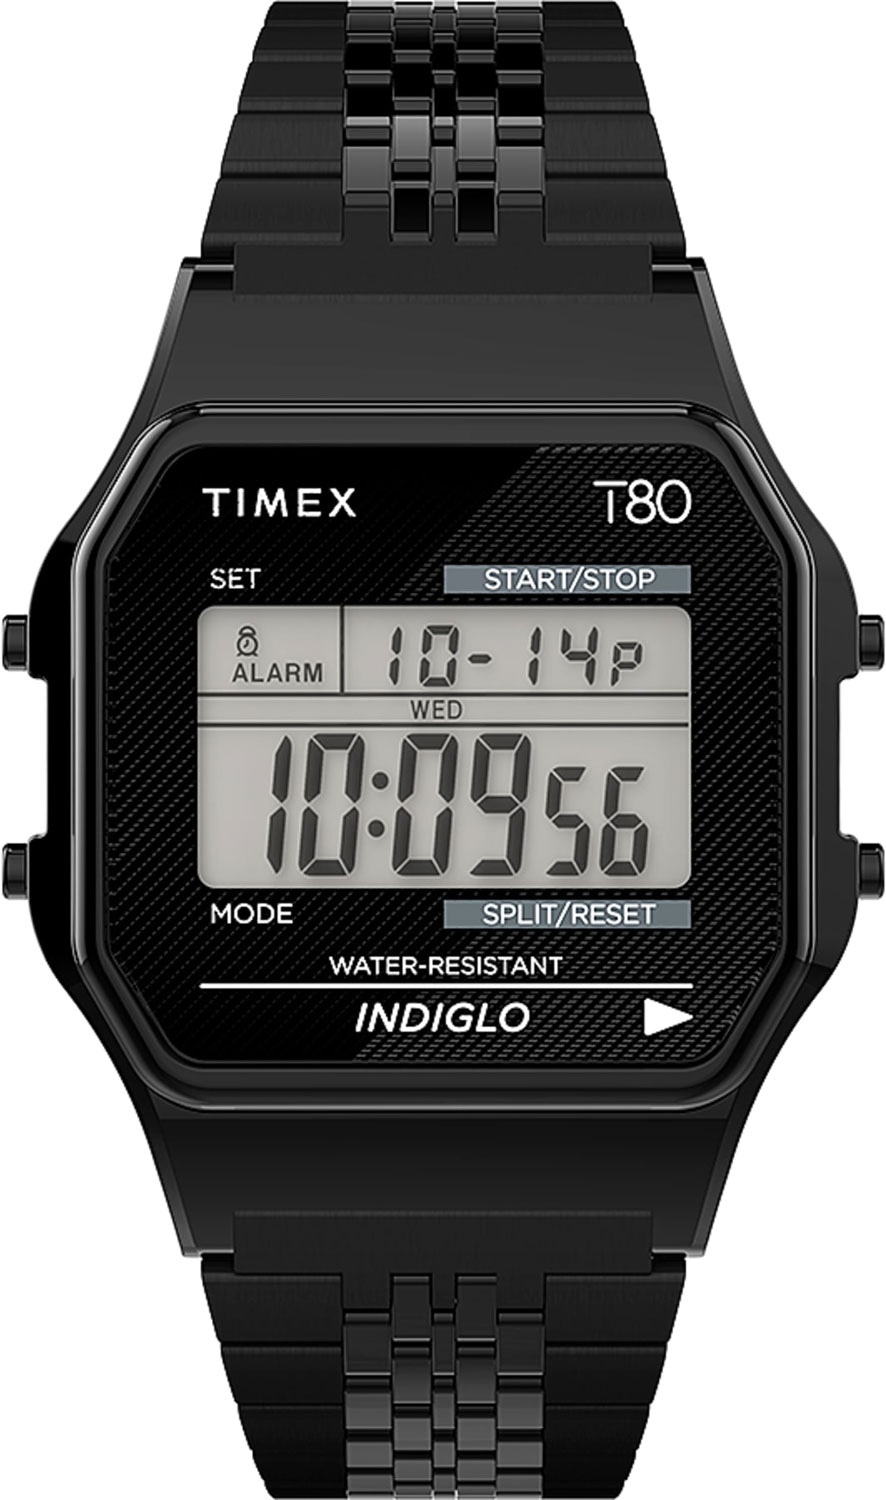   Timex TW2R79400  